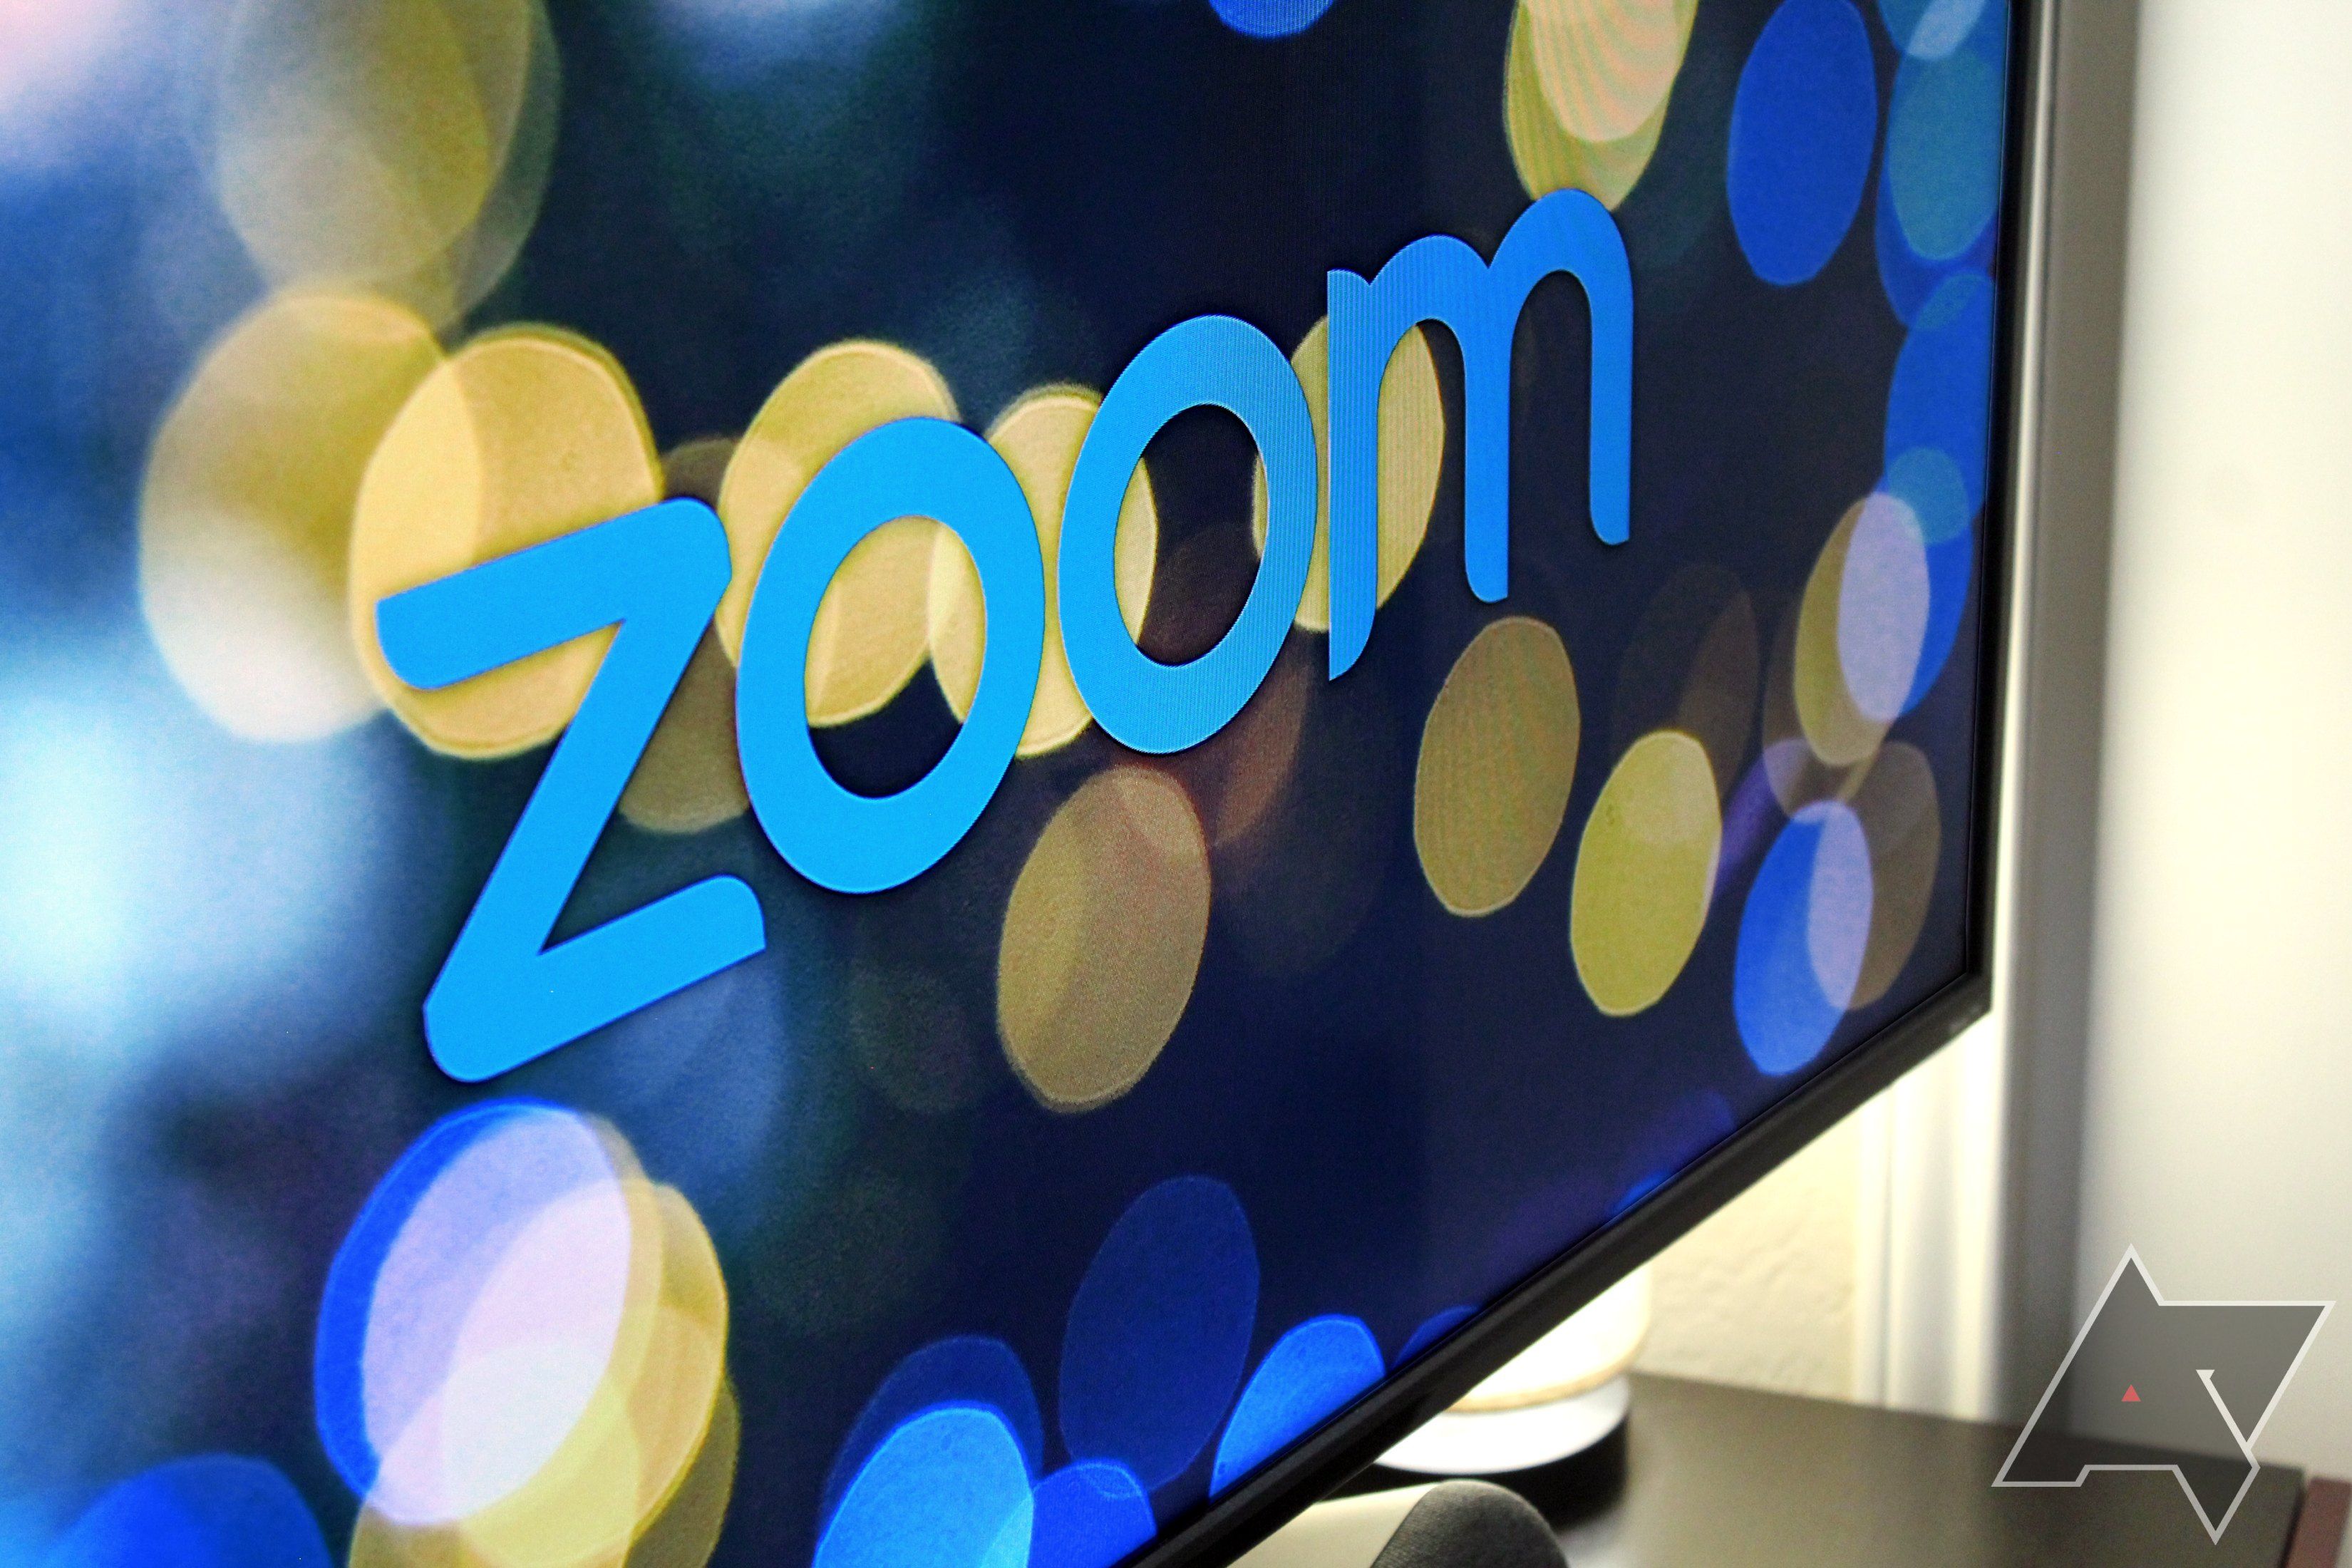 logotipo de zoom no ângulo lateral da TV